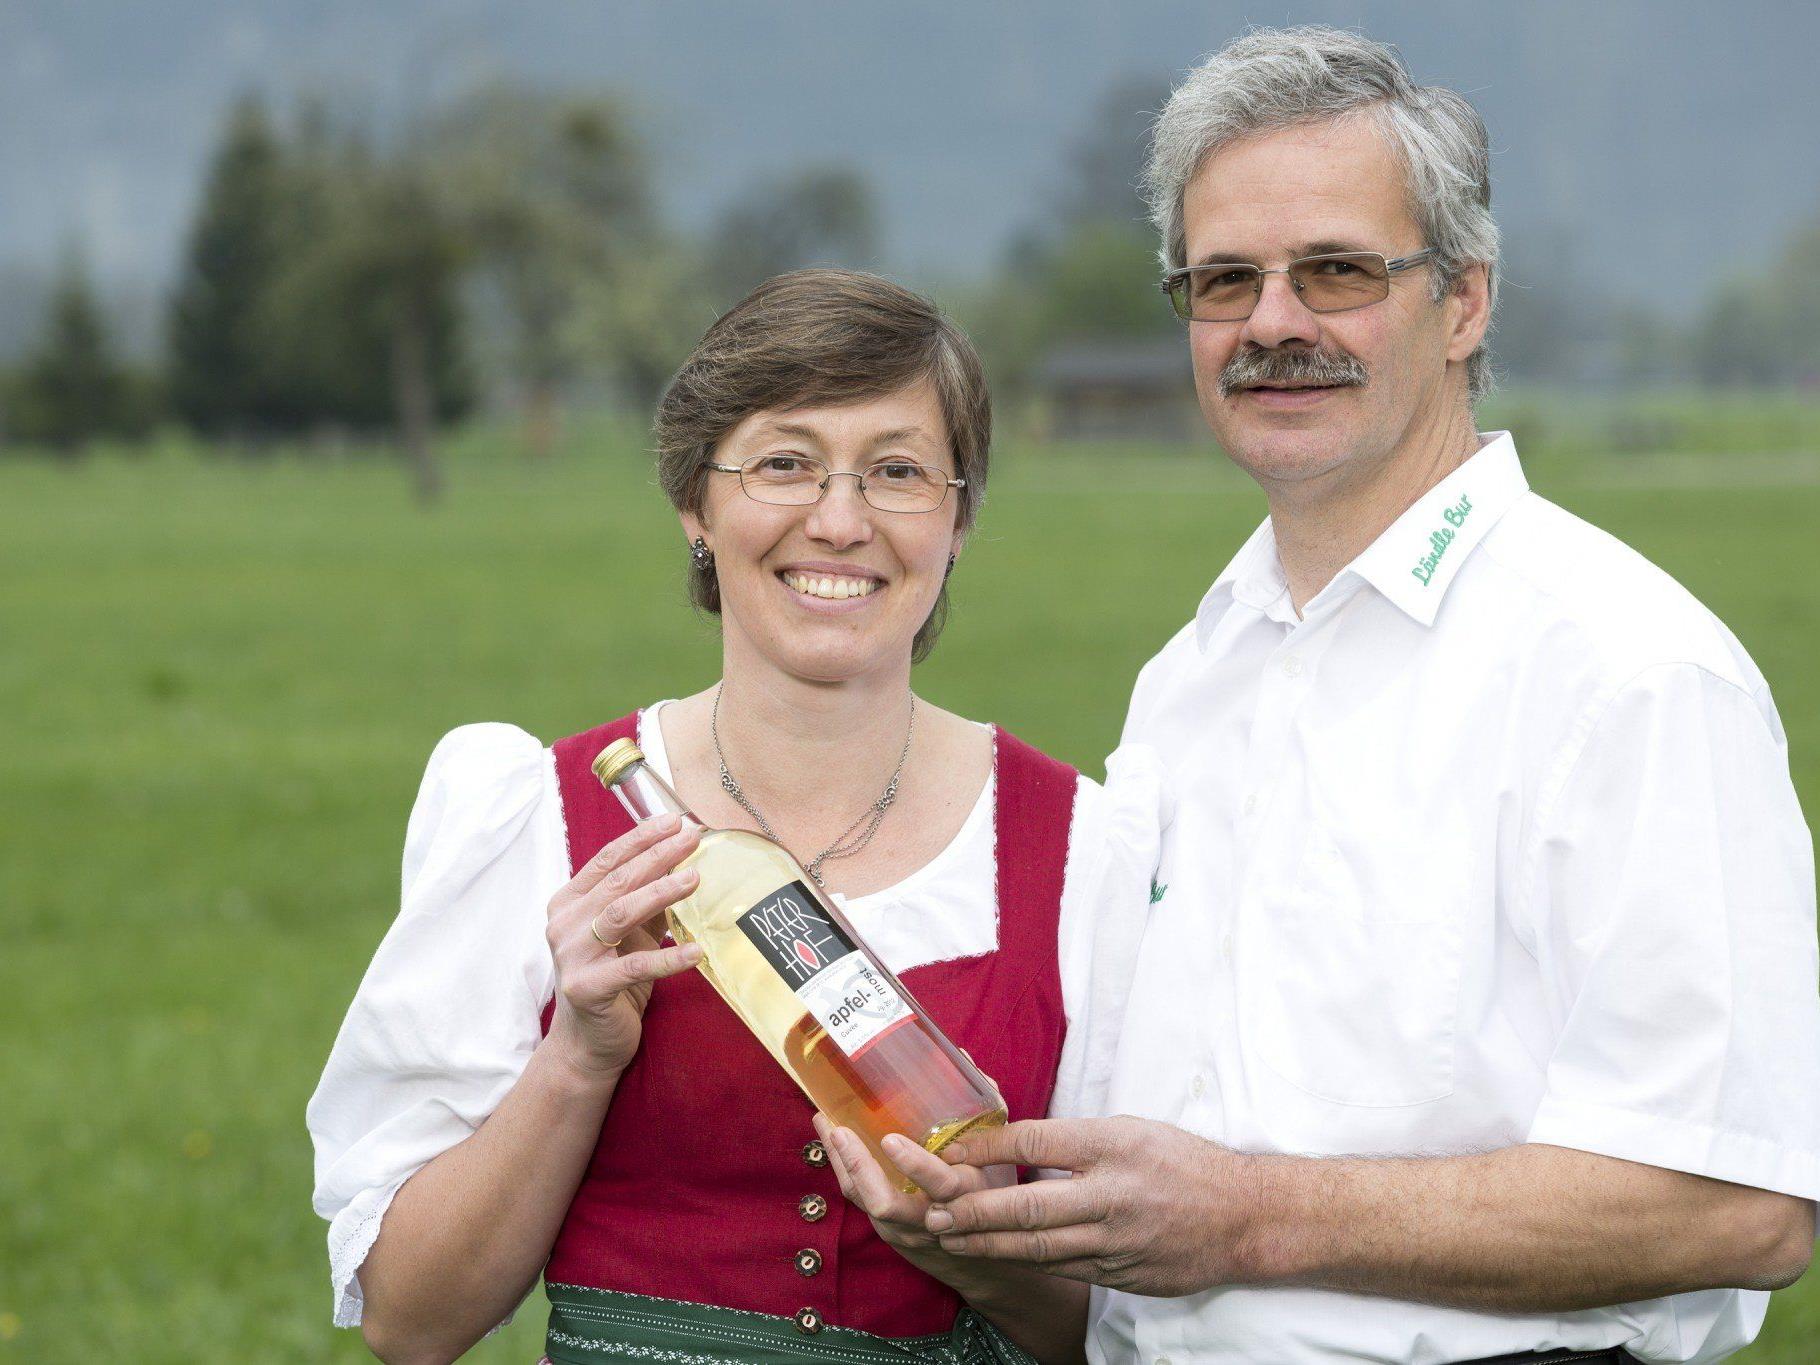 Christine und Bertram Nachbaur mit dem Apfelmost Cuvée Jg. 2013 – Landessieger der GenussKrone 2014/15 in der Kategorie Obstmost mit Restzucker